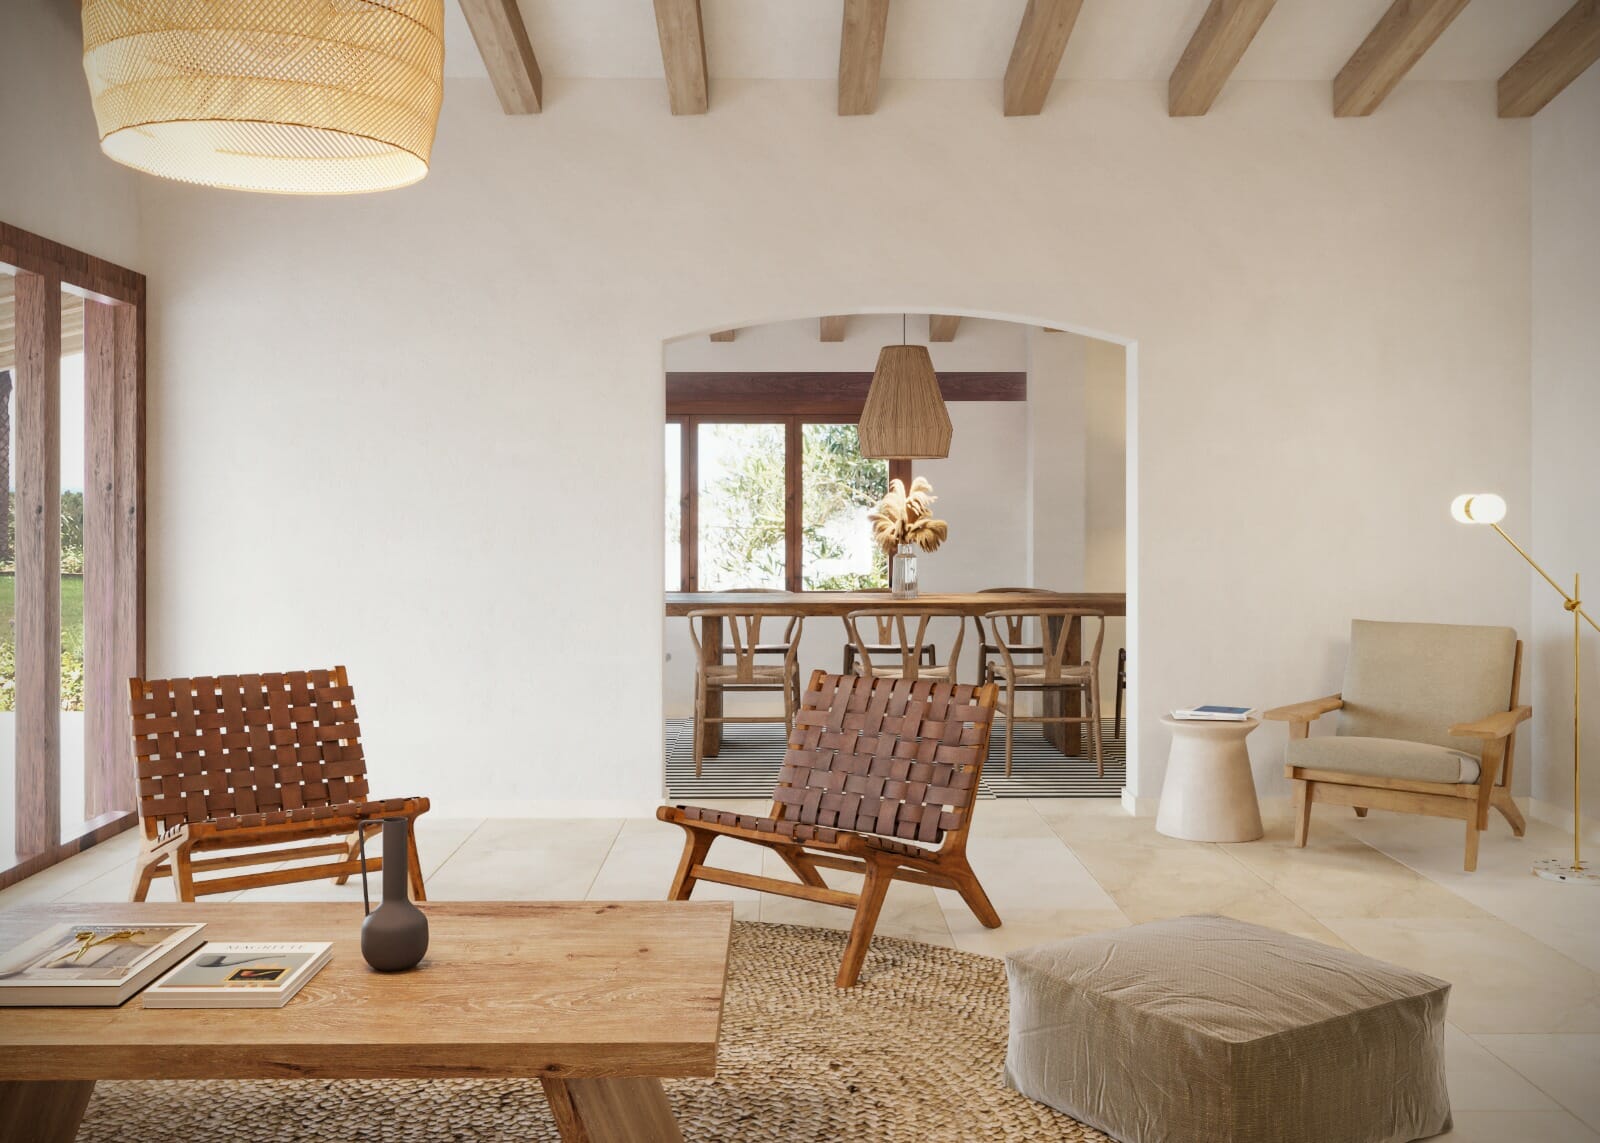 desert inspired living room